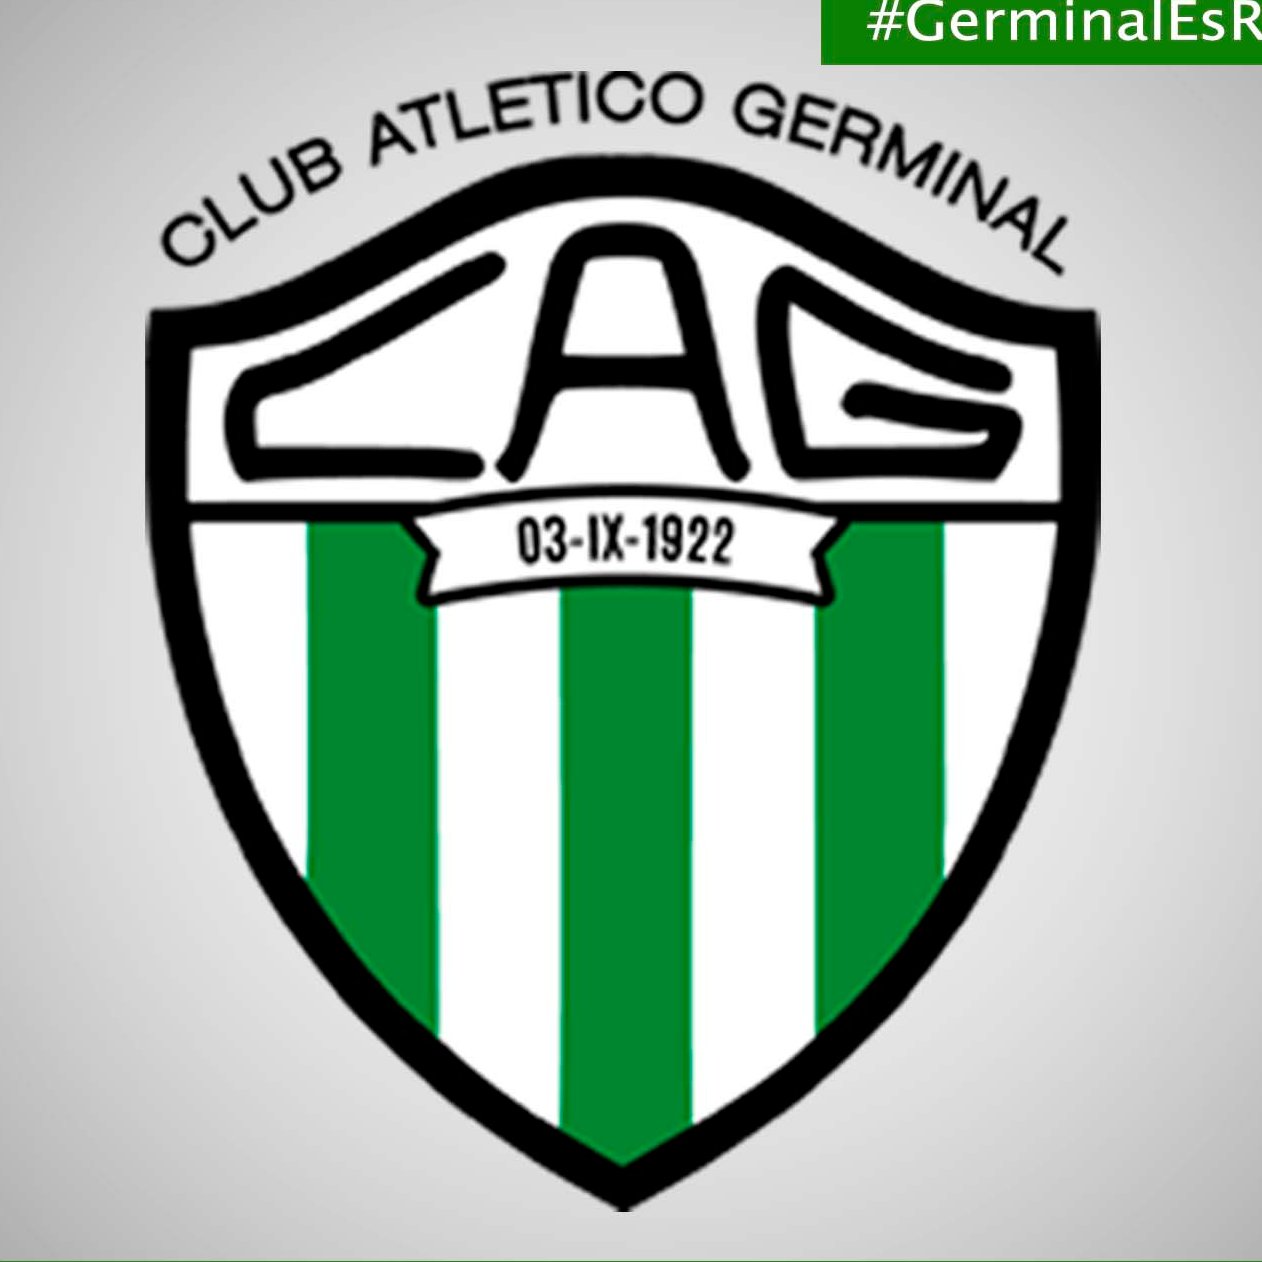 Cuenta oficial del Club Atlético Germinal de Rawson, Chubut.
Básquet, Fútbol, Hockey,Lacrosse y Pádel: toda la información del Verde y Blanco 

🇳🇬🏀⚽️🏑🥍🇳🇬